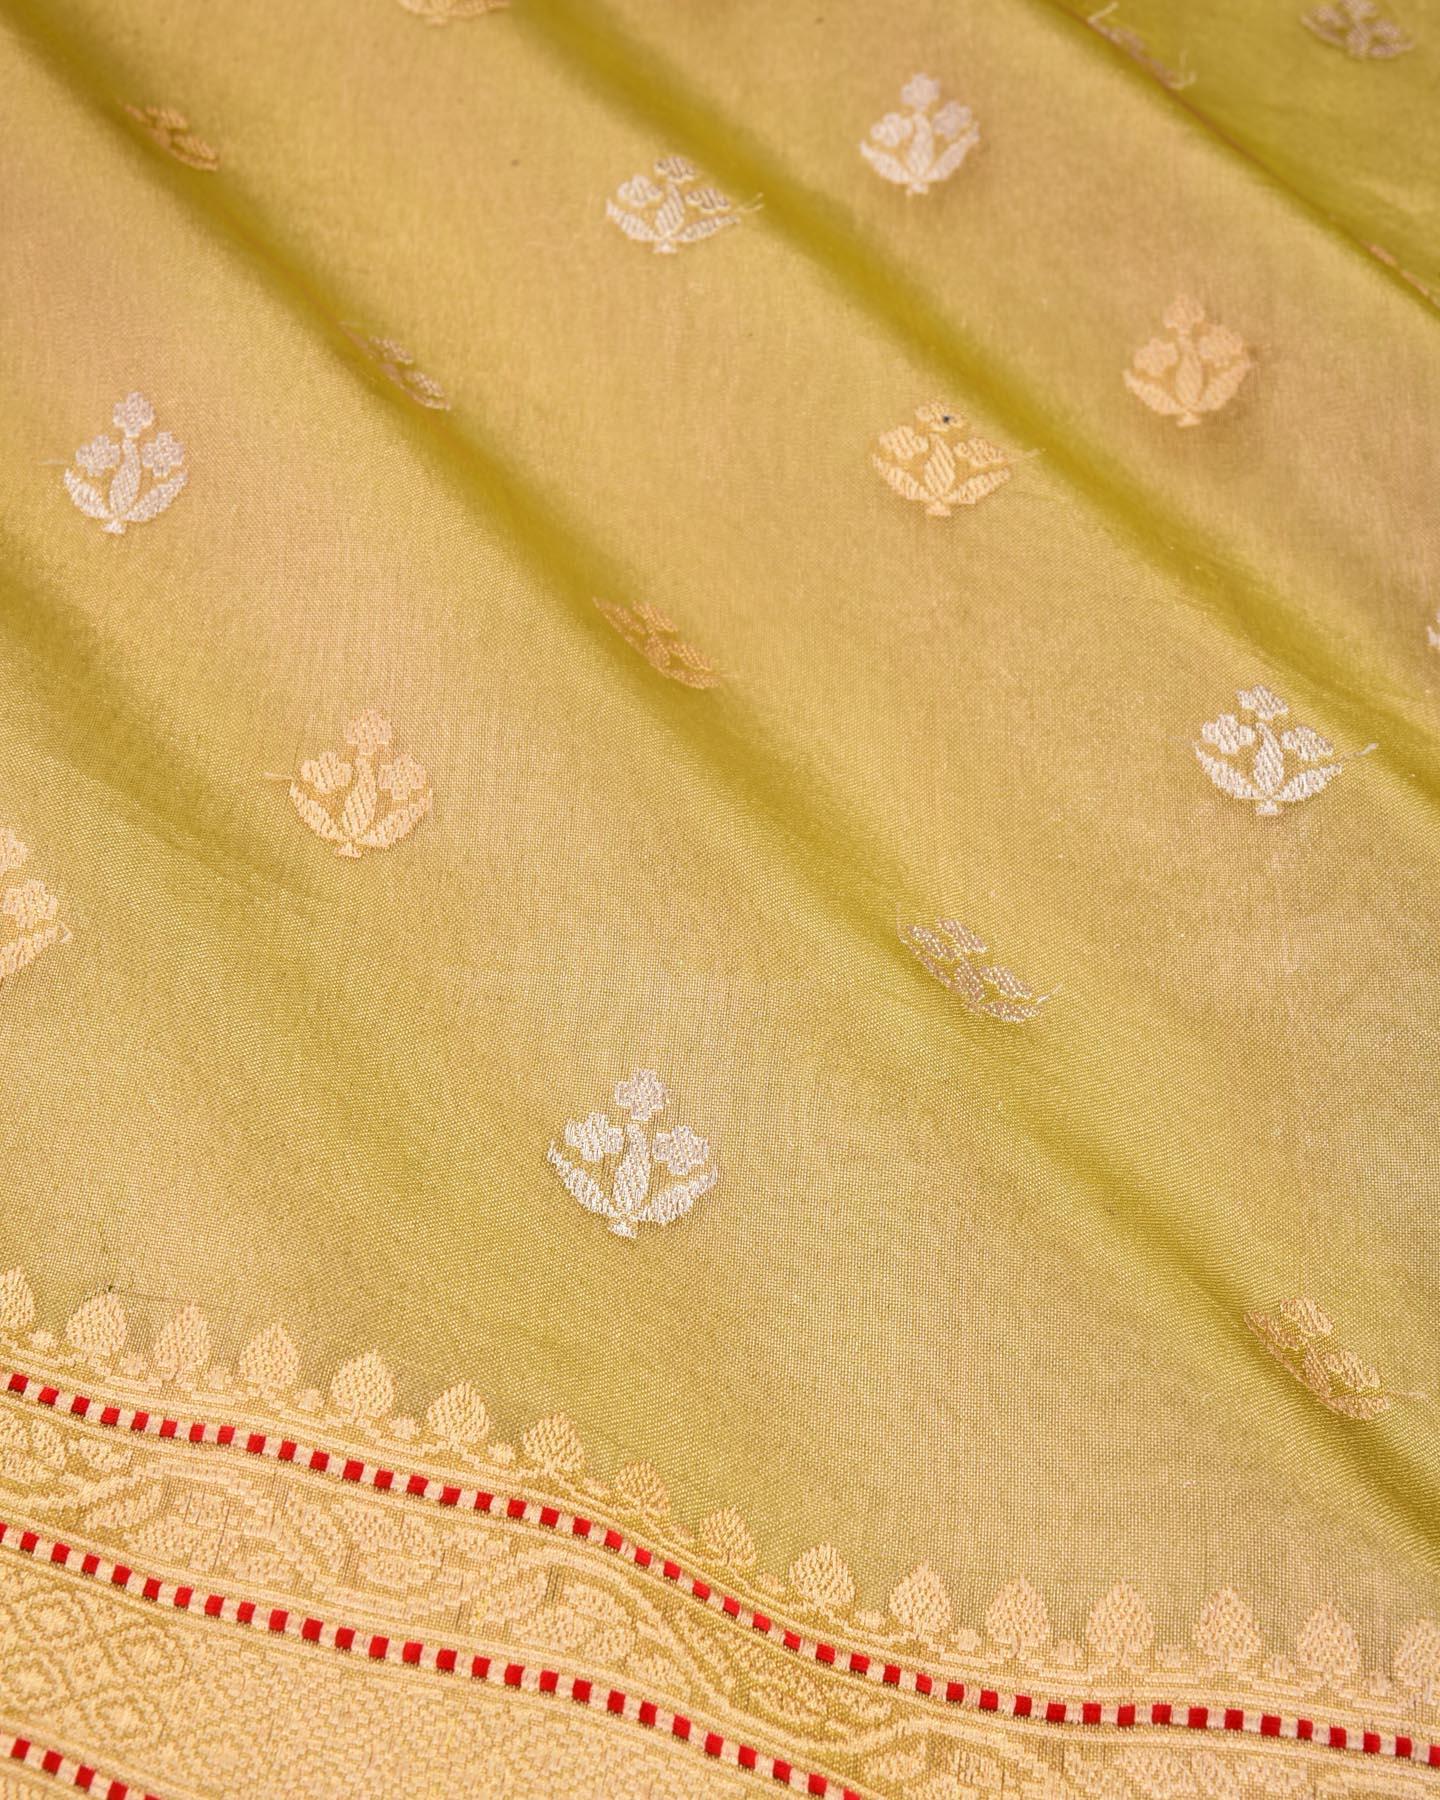 Metallic Green Banarasi Buti Ektara Kadhuan Brocade Handwoven Kora Tissue Saree - By HolyWeaves, Benares